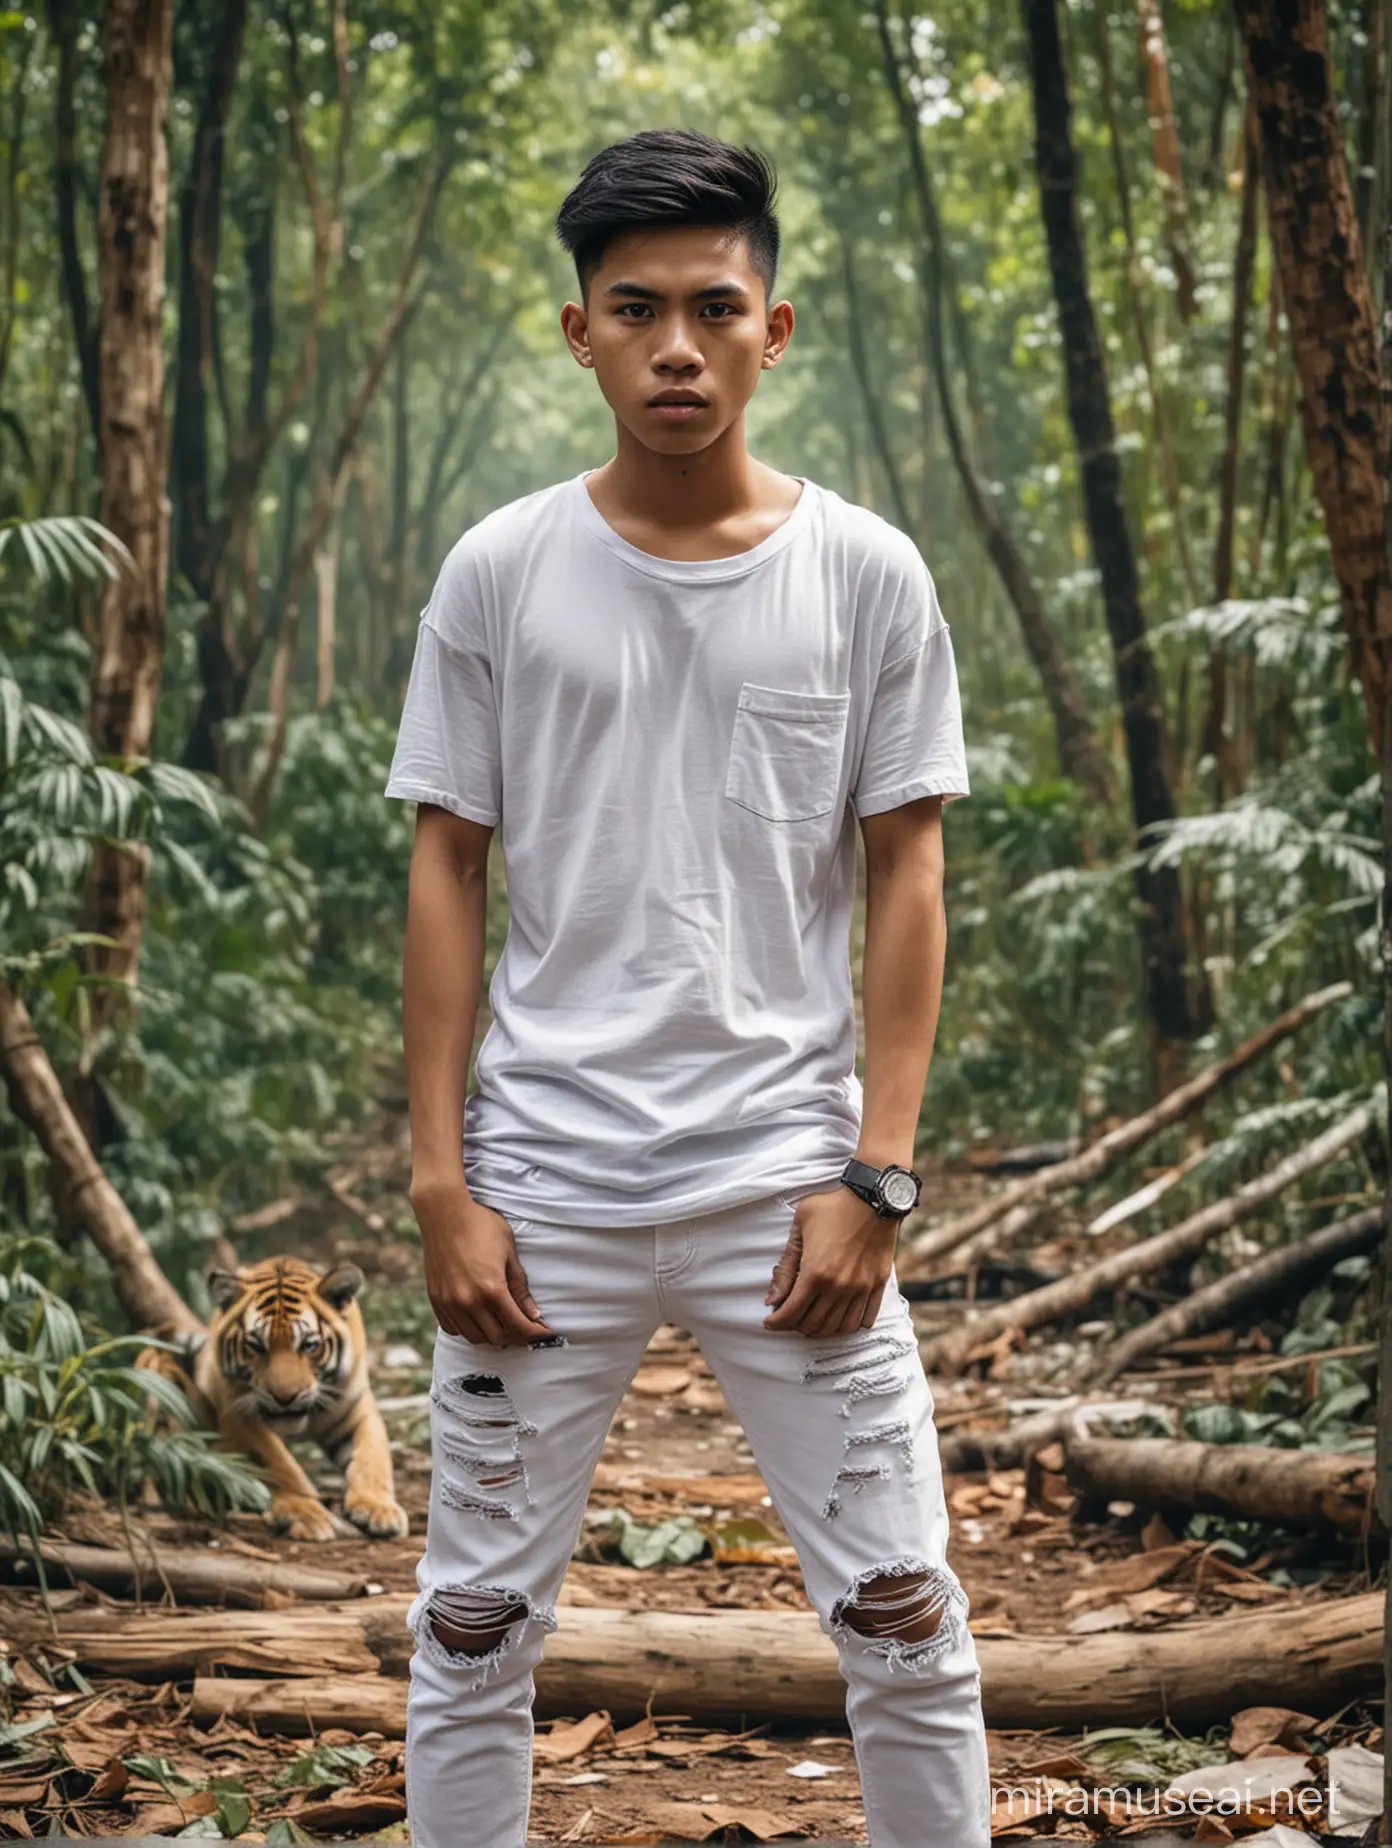 Poto remaja indonesia umur 17 tahun,tampan rambut undercut tubuh sedang,dengan pakaian kaos dan kemeja kasual,dan celana jeans putih robek,sedang berpose bertahan dari serangan harimau yang mencoba menyerangnya dengan kekuatan penuh serta memberikan luka berat padanya,latar hutan yang sangat sejuk, efek pertempuran sengit